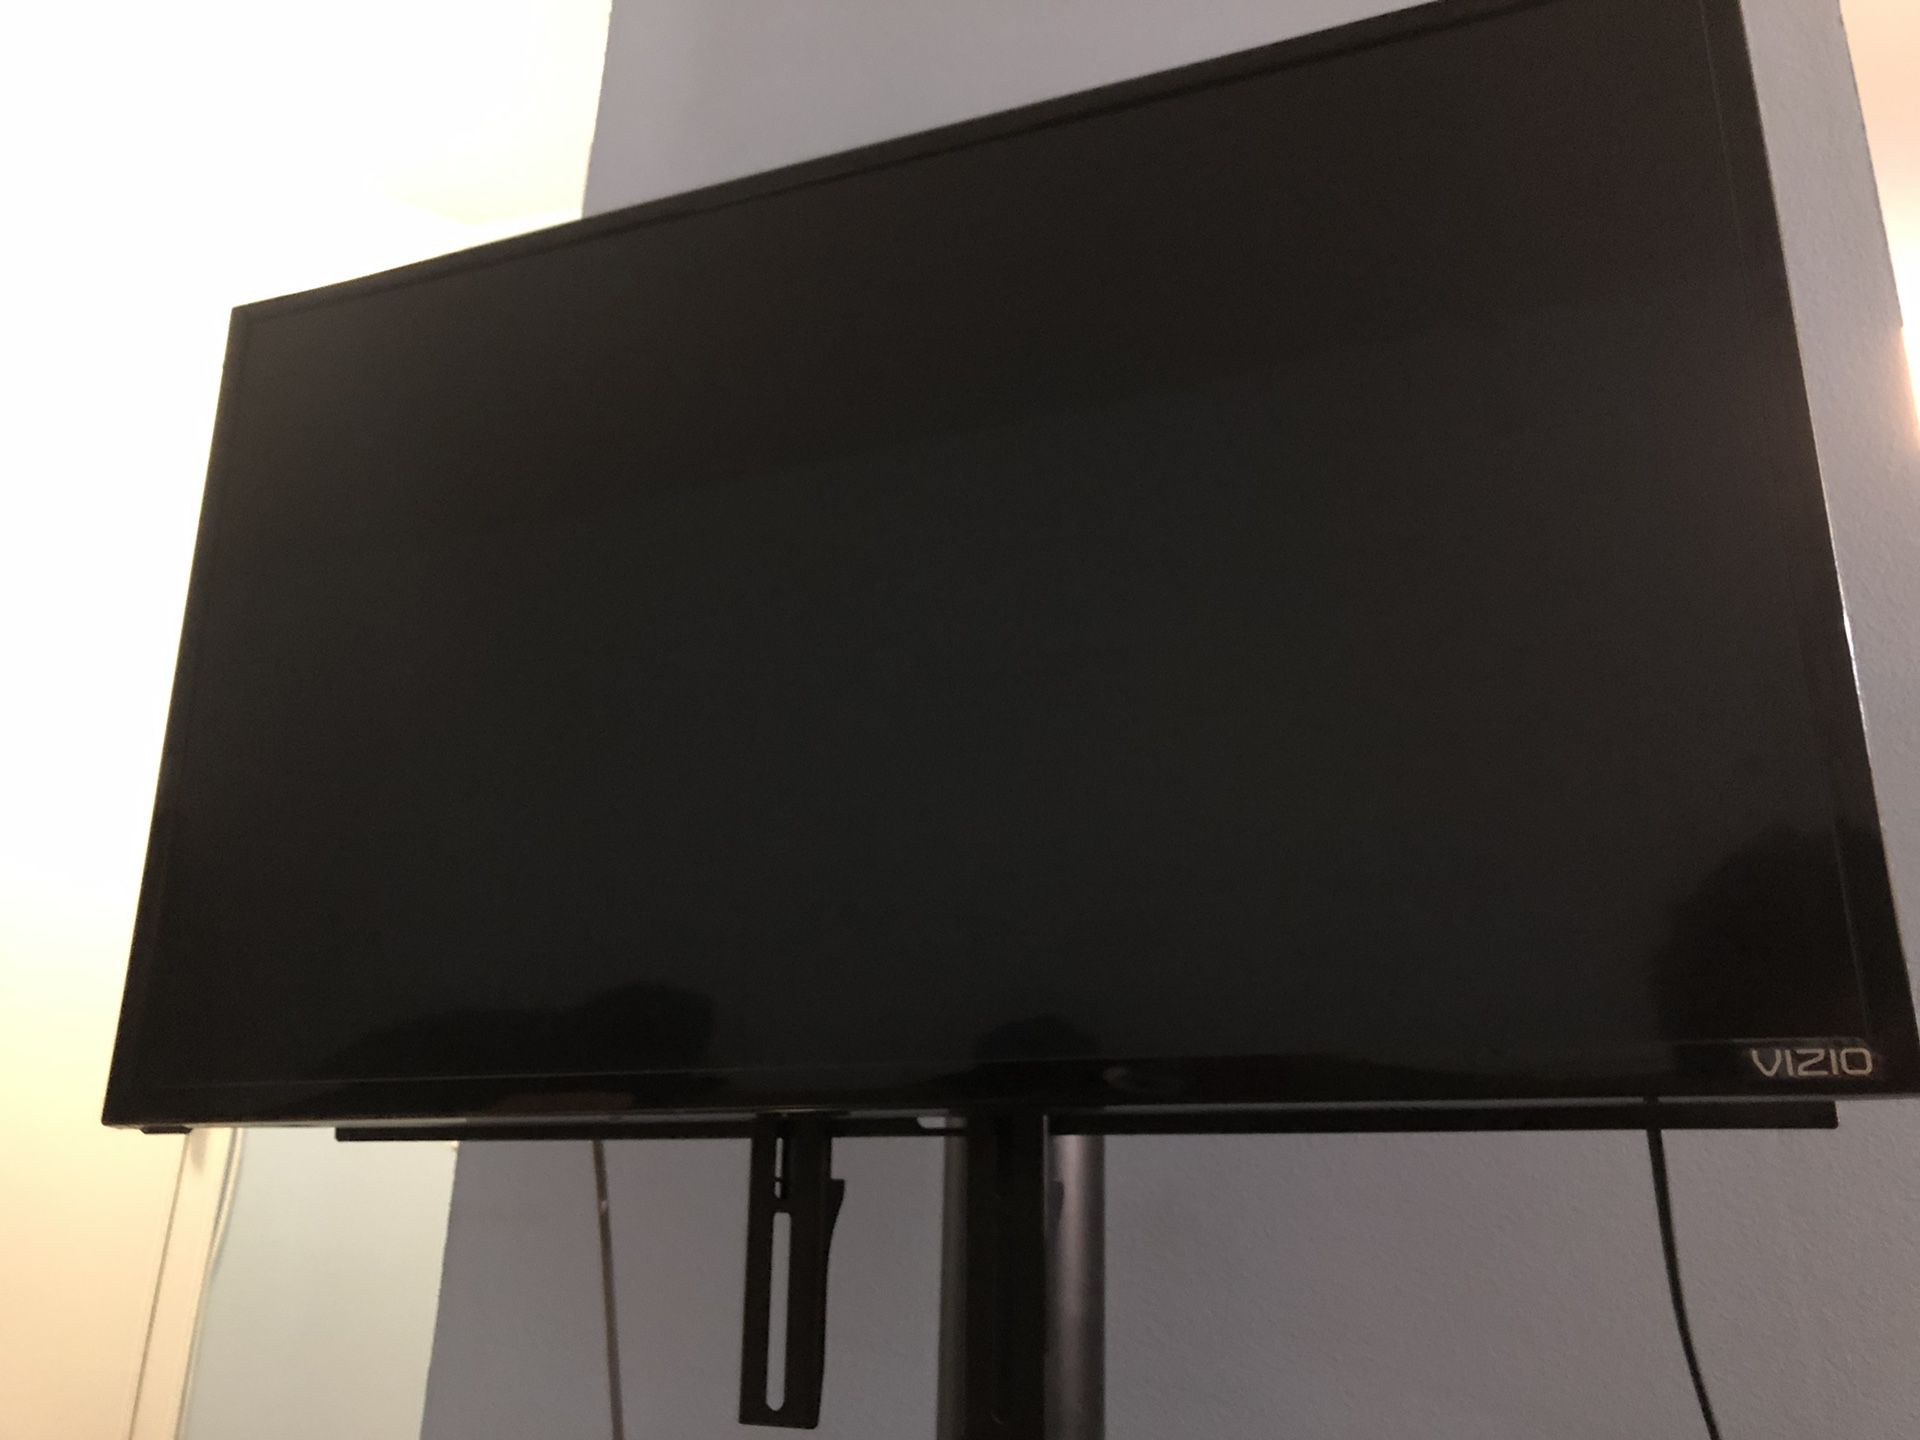 VIZIO & Tempered Glass TV Stand